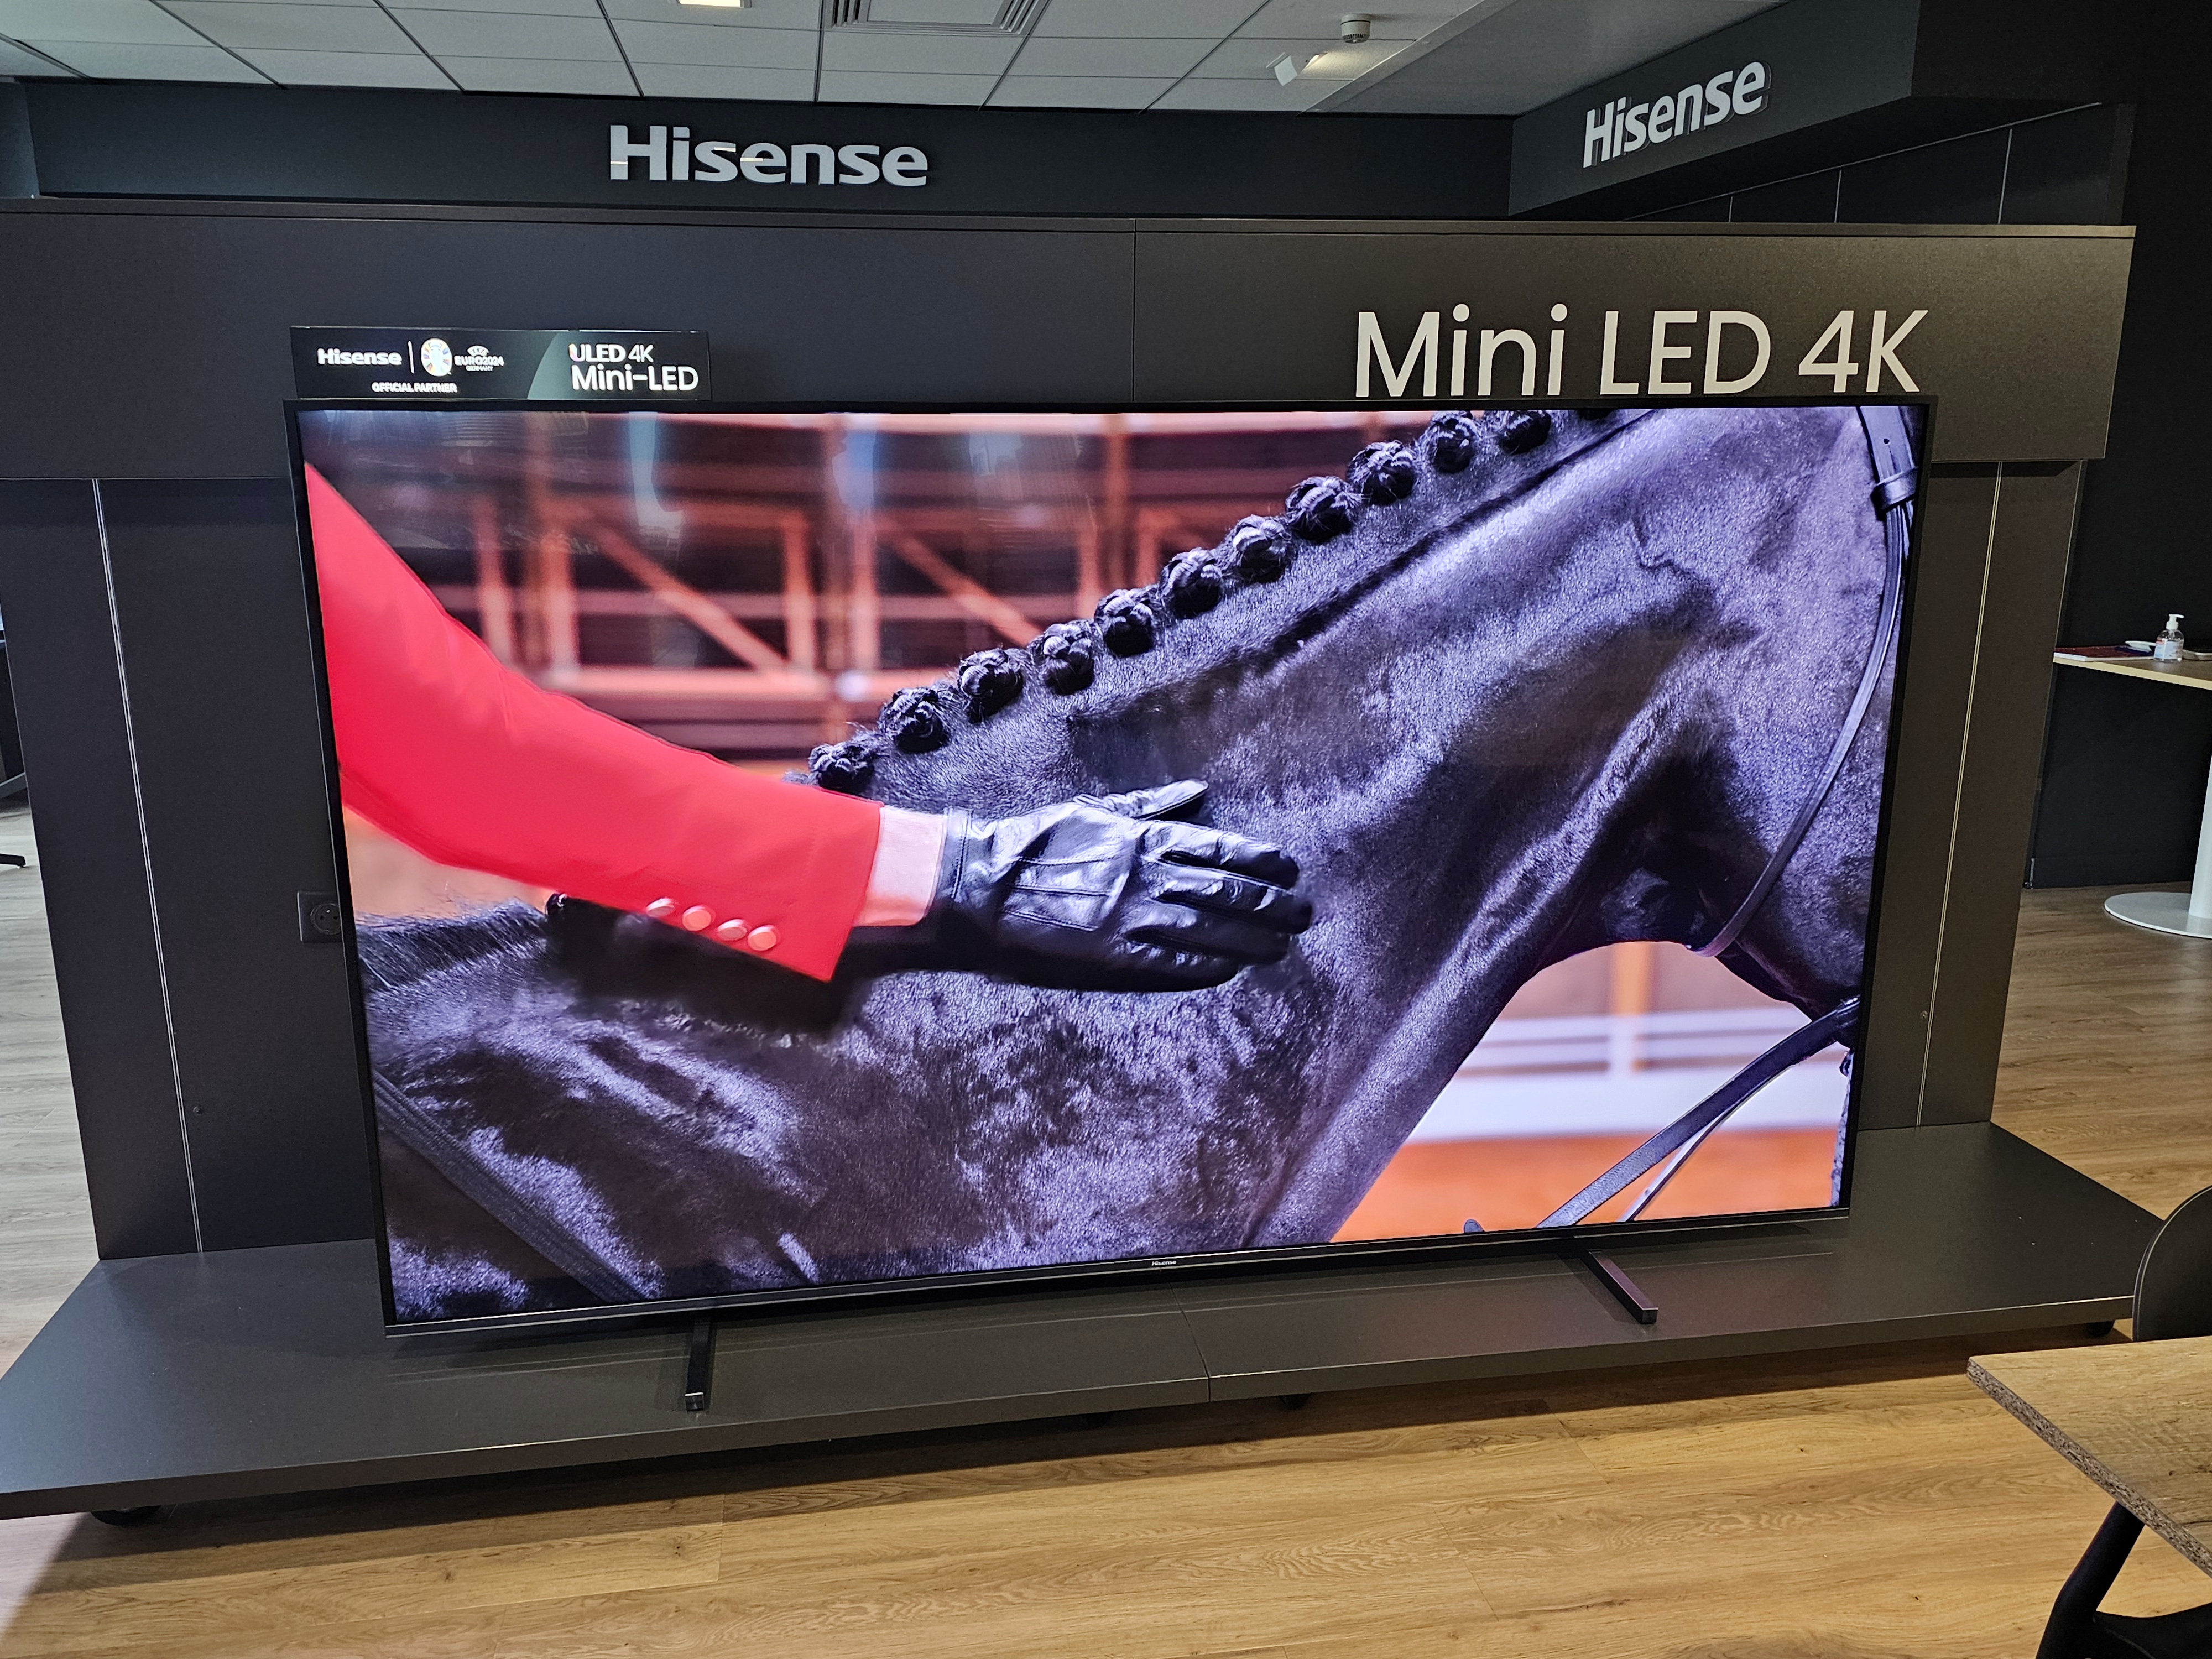 Des ambitions XXL chez Hisense avec ses nouvelles gammes de TV MiniLED et QLED